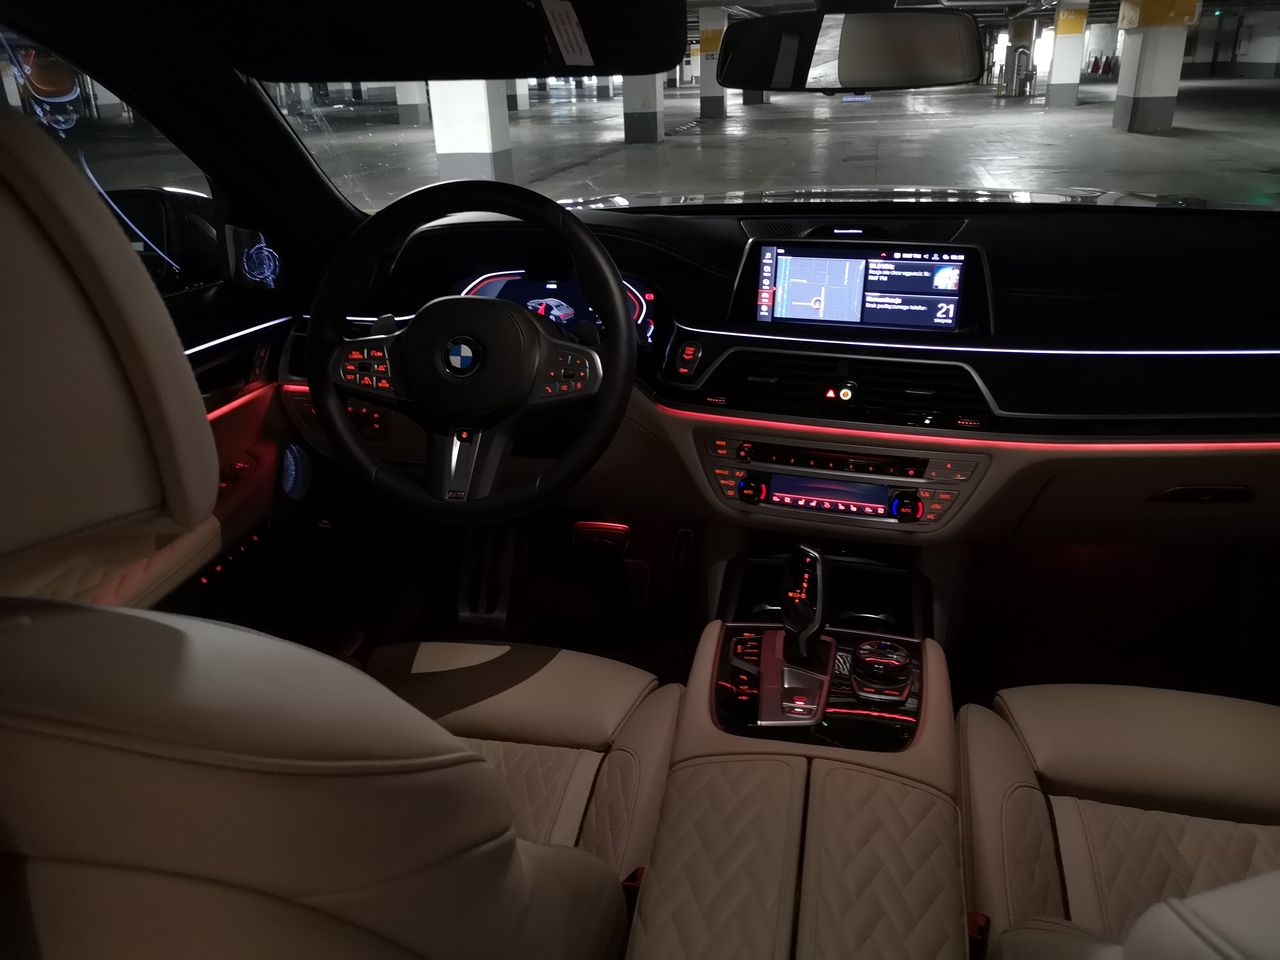 BMW 750i xDrive: Systemy wsparcia kierowcy, Night Vision, zdalne sterowanie i audio Bowers & Wilkins